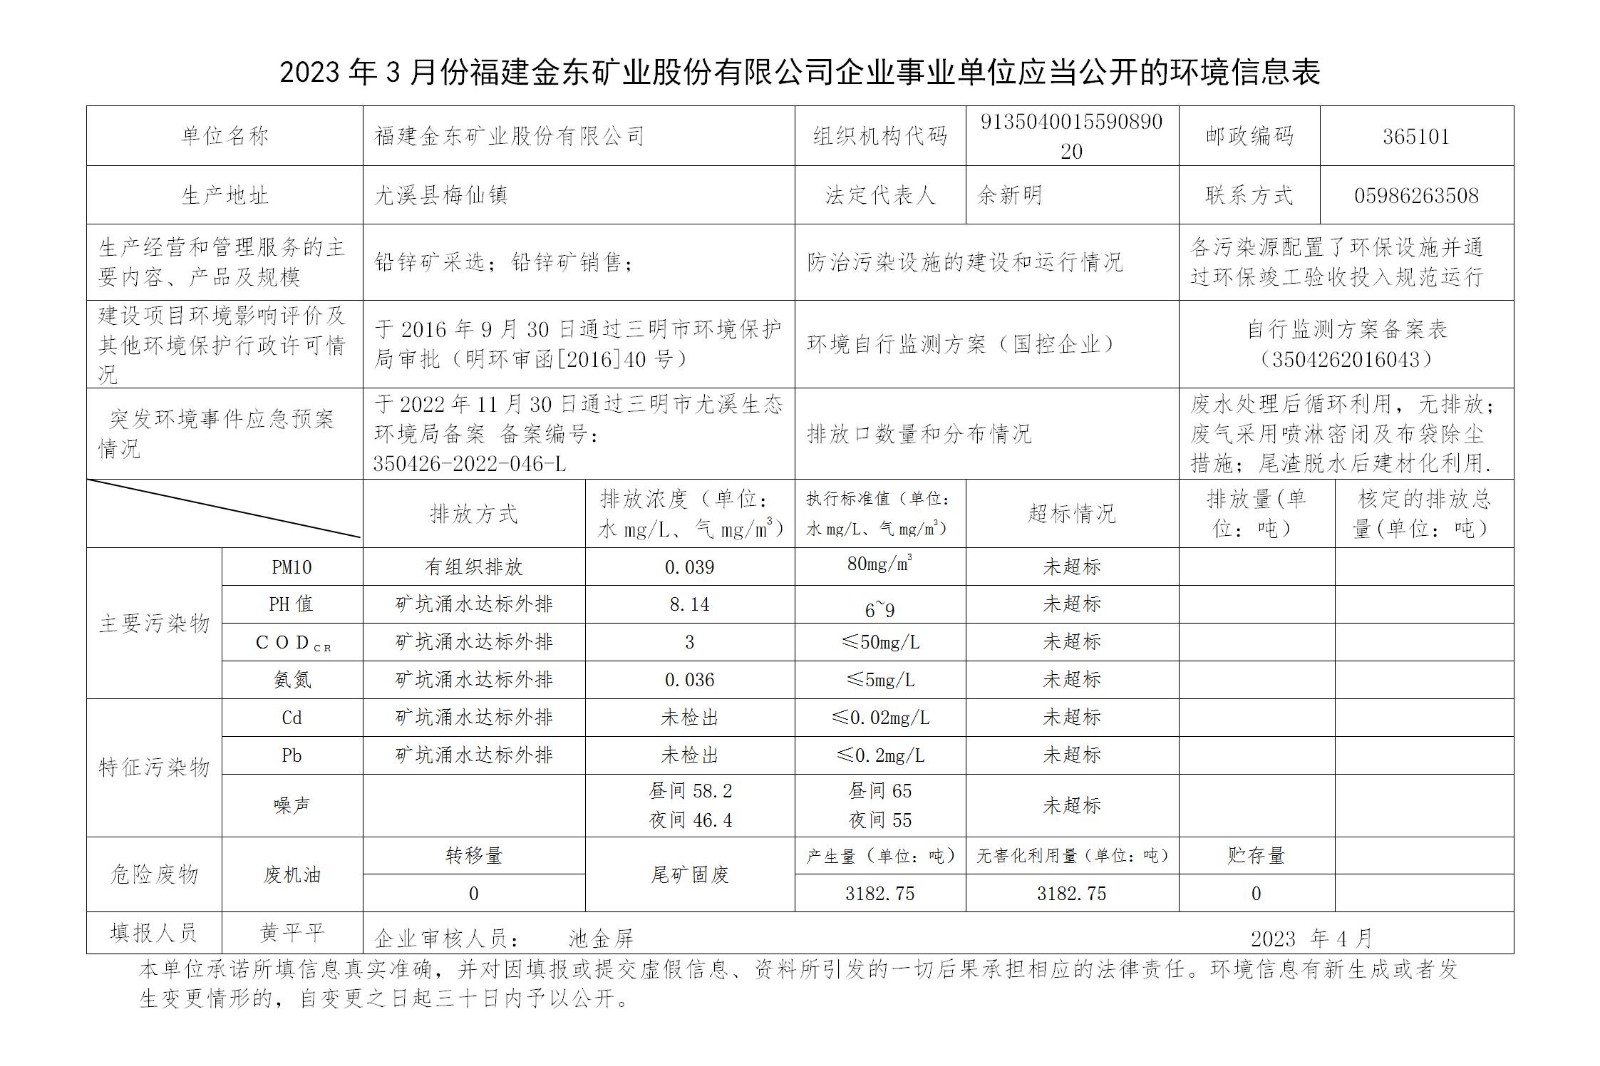 2023年3月份kok官方网站企业事业单位应当公开的环境信息表_01.jpg